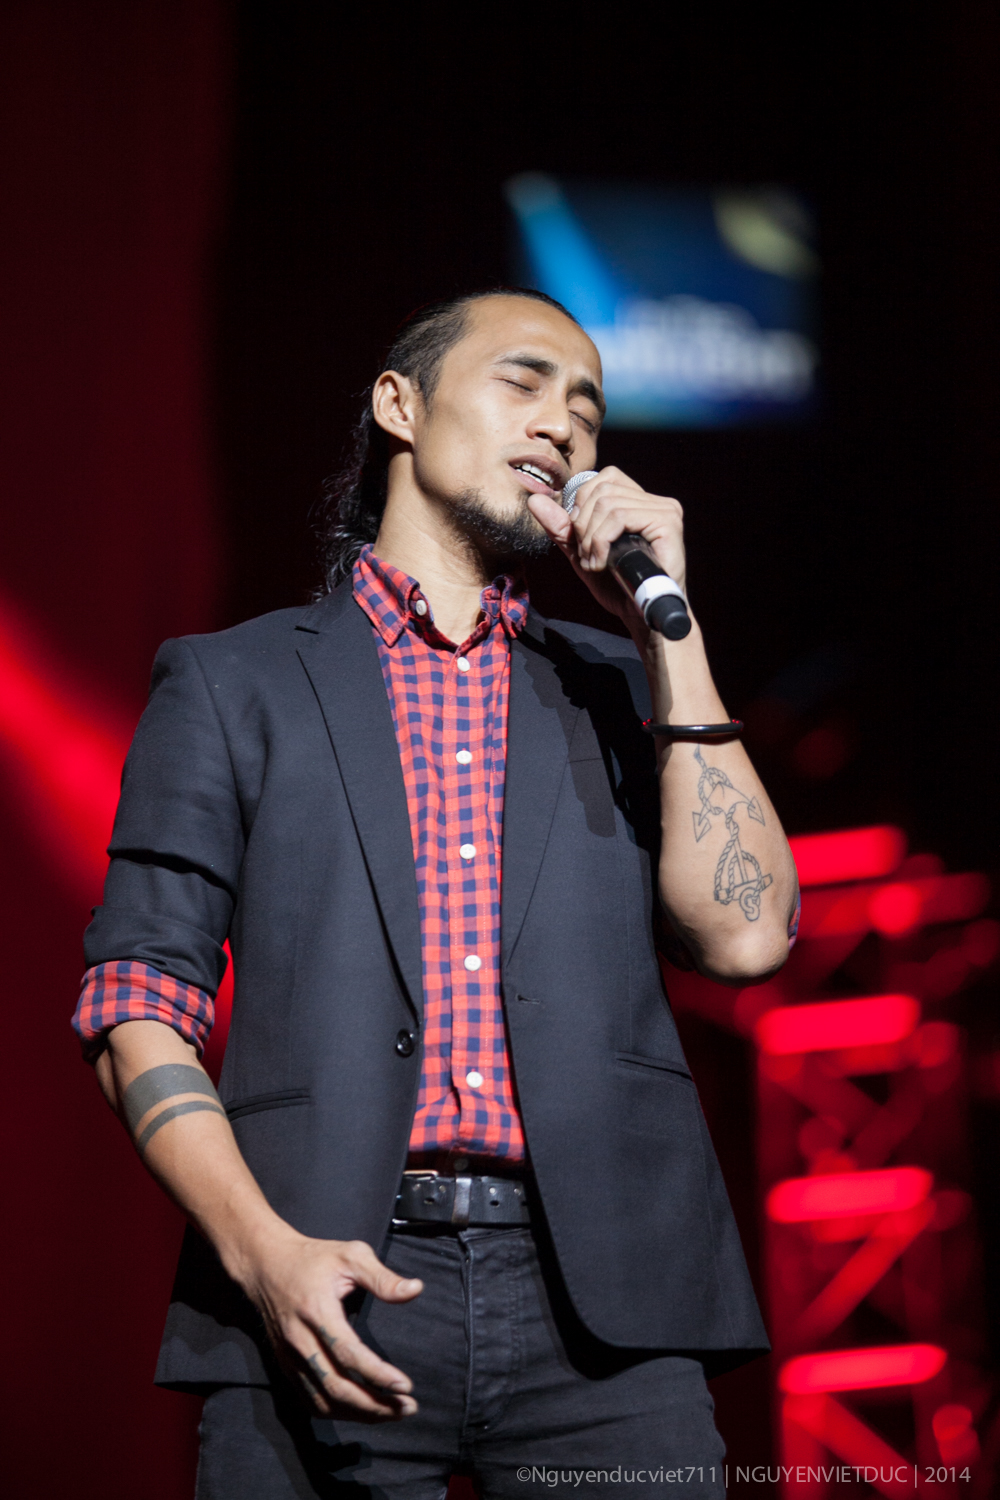 Phạm Anh Khoa là khách mời đặc biệt trong đêm nhạc Uyên Linh.